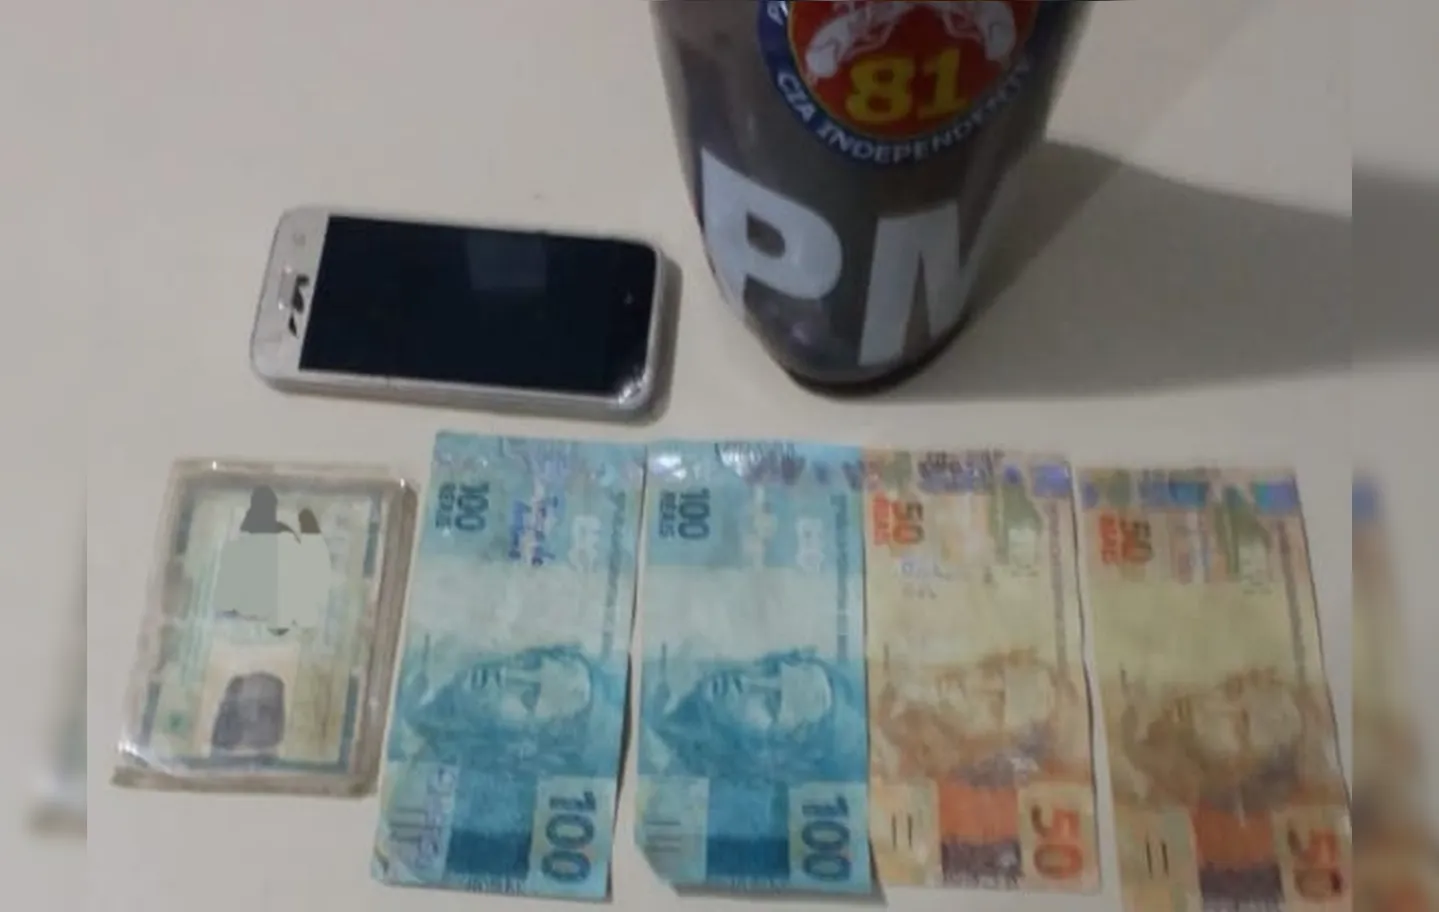 Mulher que pagou com o dinheiro falso (notas de 100 e 50) foi apresentada na 27ª Delegacia de Itinga I Foto: Divulgação I SSP